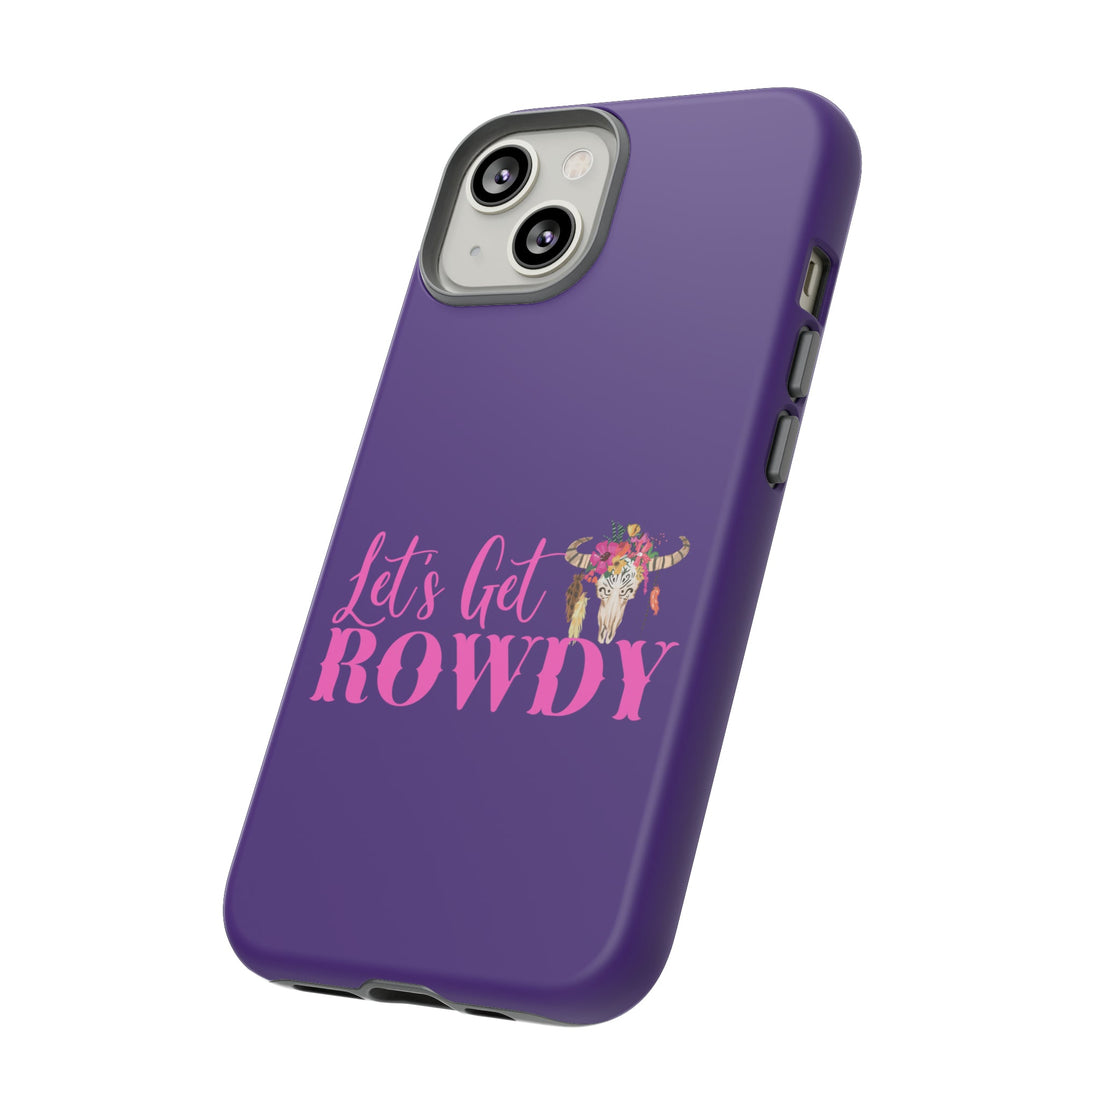 Let's Get Rowdy Tough Cases - Phone Case - Positively Sassy - Let's Get Rowdy Tough Cases